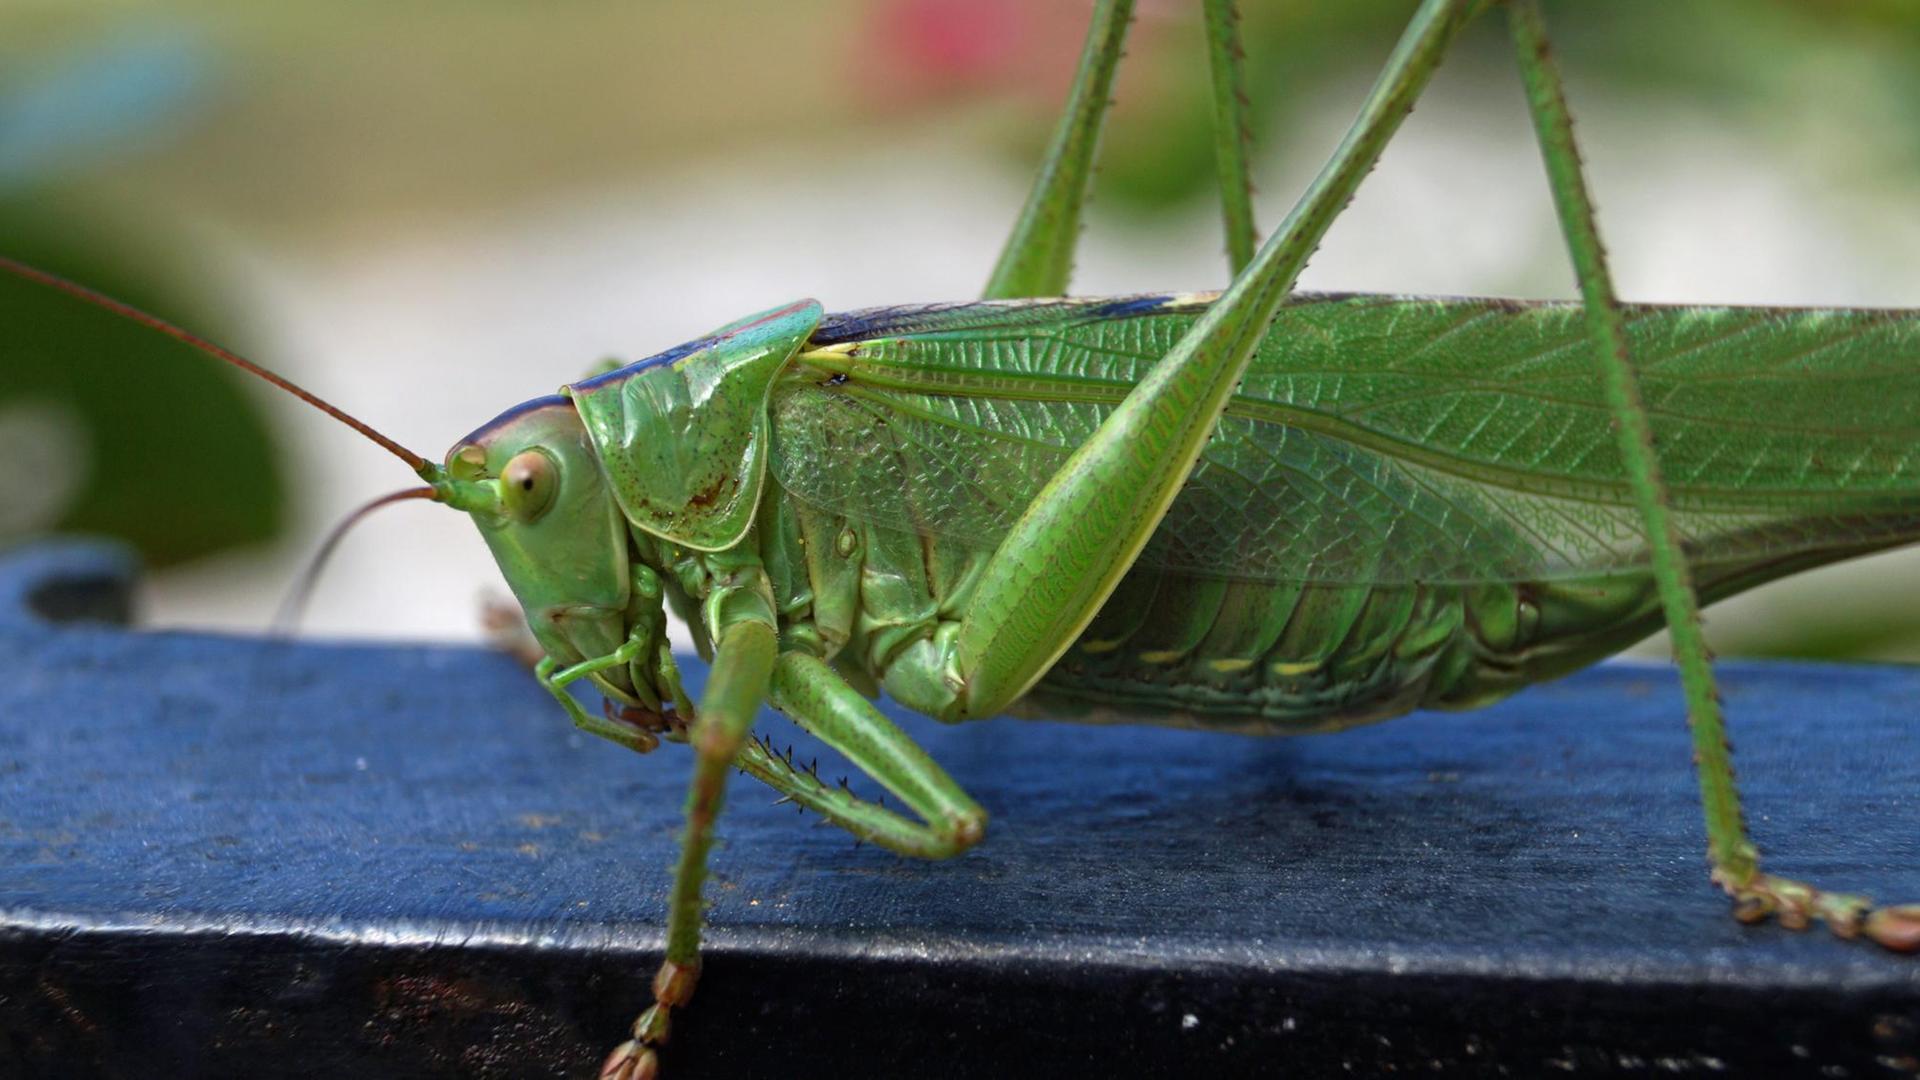 Eine grüne Zikade - kann man die wirklich essen?